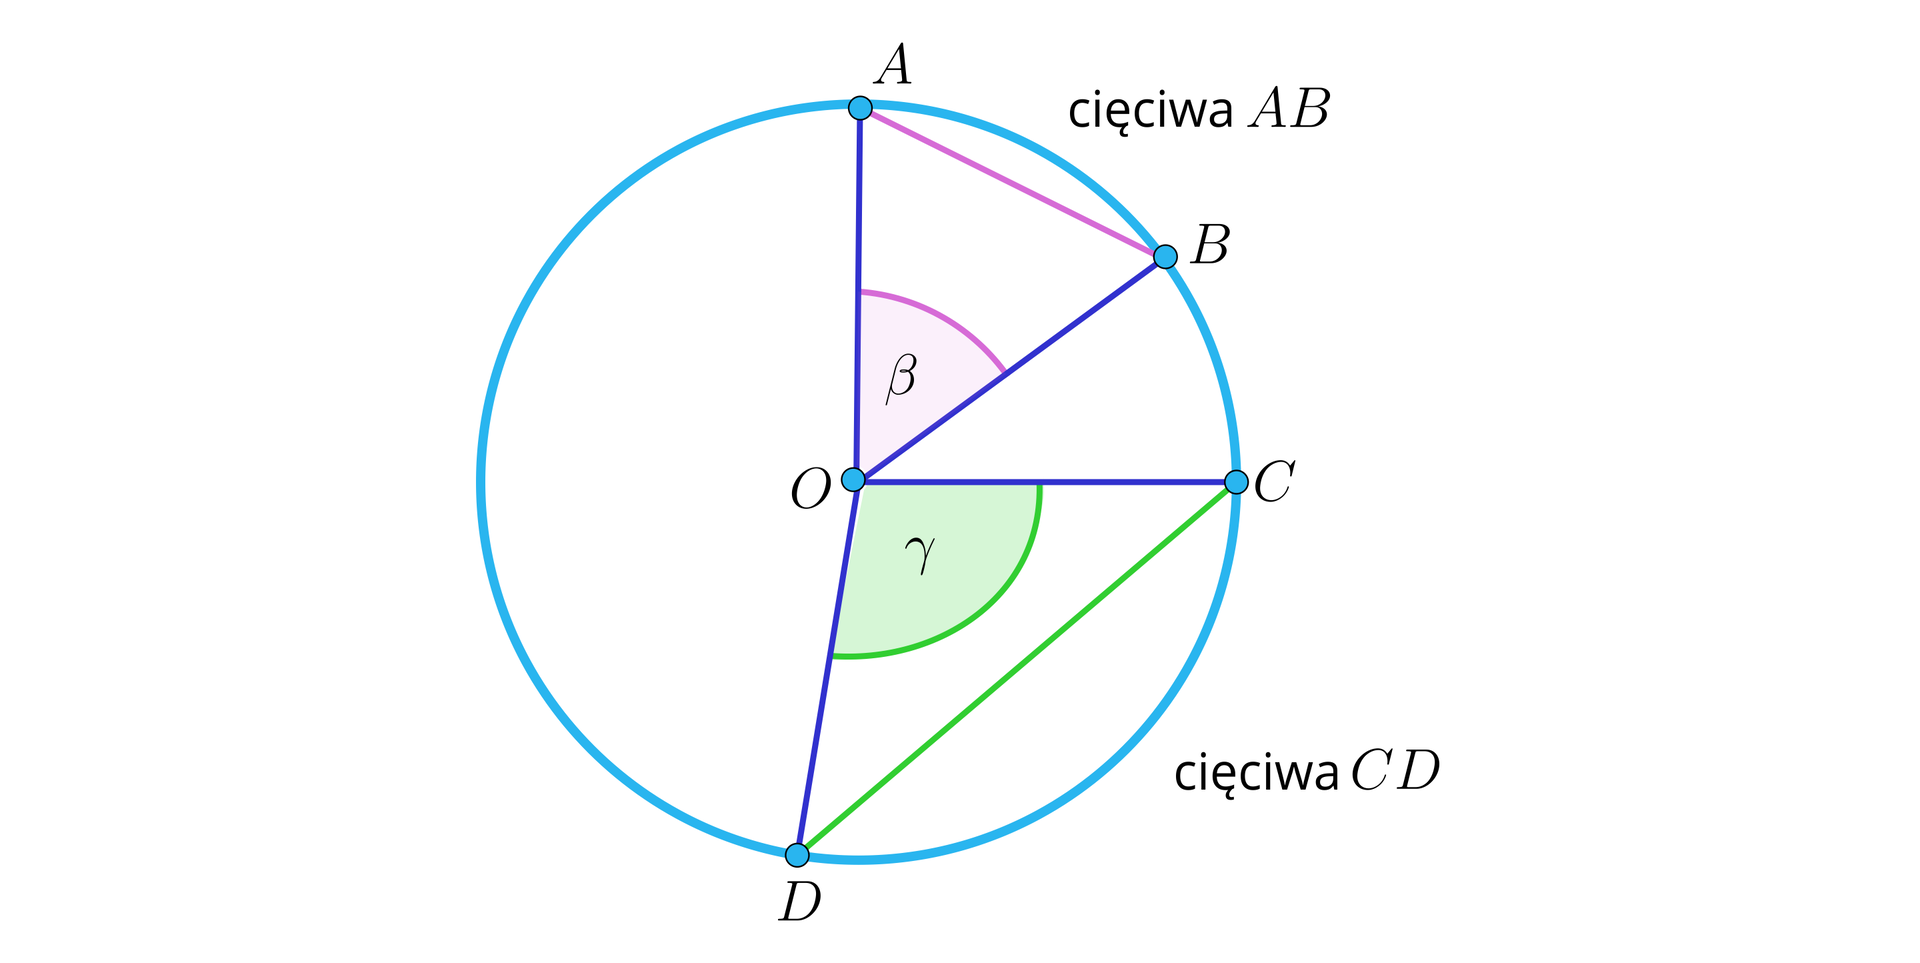 Rysunek przedstawia okrąg o środku w punkcie O. Dwa promienie tego okręgu, to jest OA oraz  OB, wyznaczają kąt ostry β oparty na zaznaczonej cięciwie AB.  Kolejne dwa promienie tego okręgu, to jest OC oraz OD, wyznaczają kąt rozwarty  γ oparty na zaznaczonej cięciwie CD.